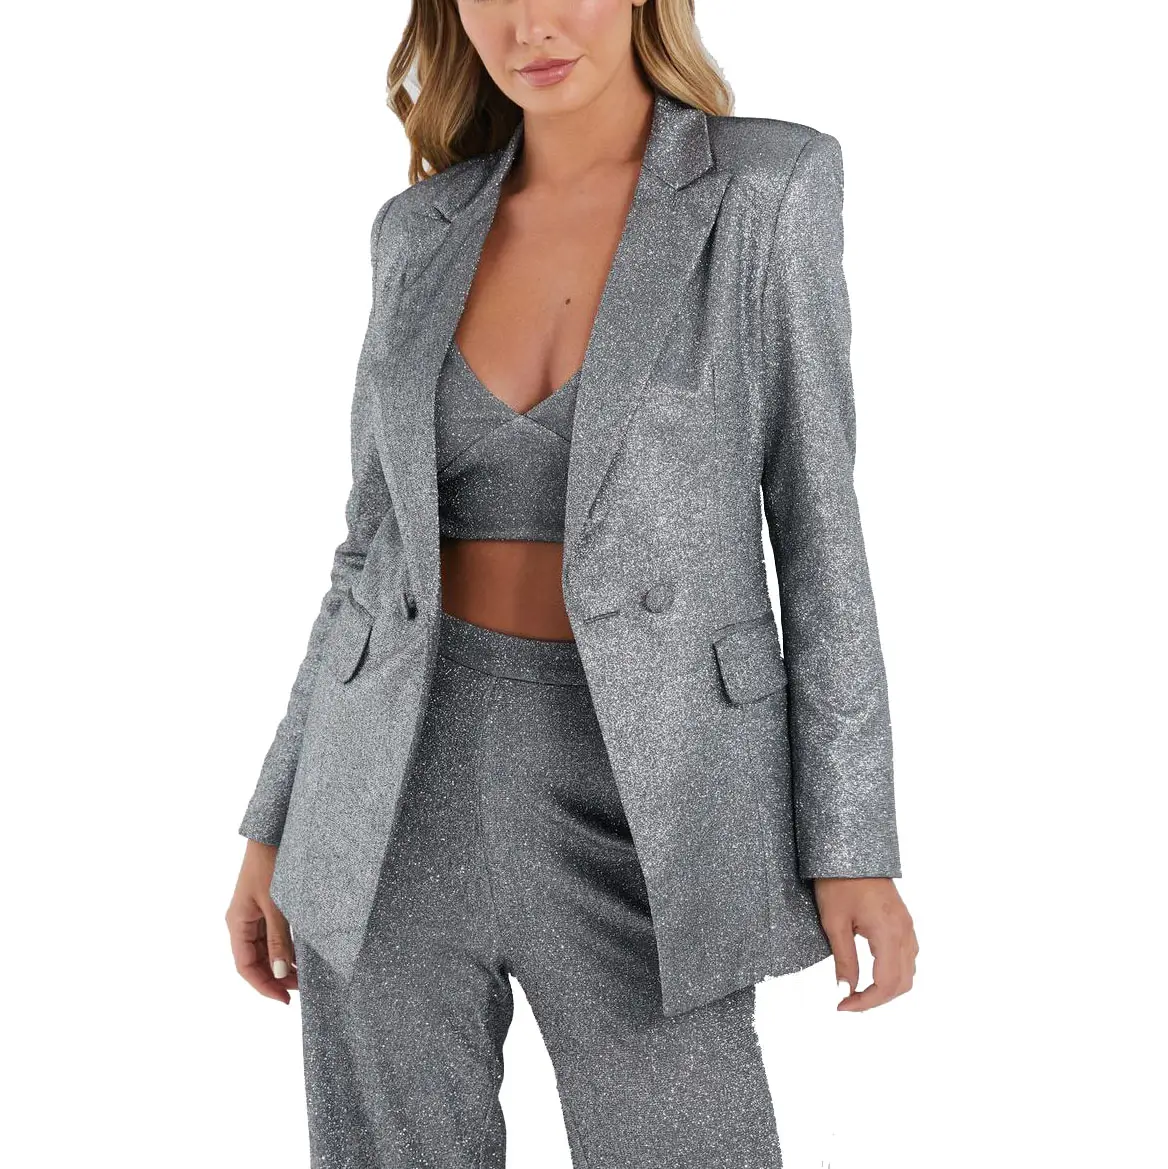 Giacca Blazer doppiopetto personalizzata OEM giacca donna tasca con patta argento Glitter Blazer su misura